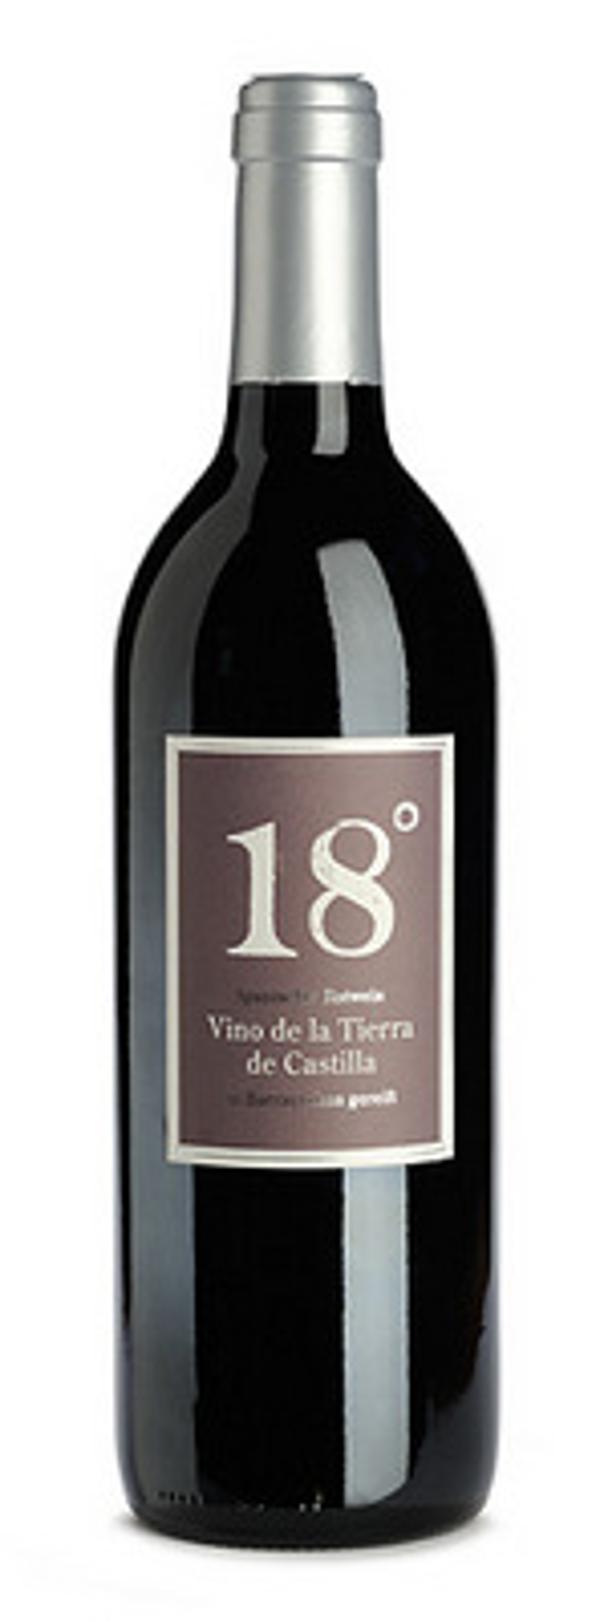 Produktfoto zu Rotwein 18° Vino de España 0,75l bioladen